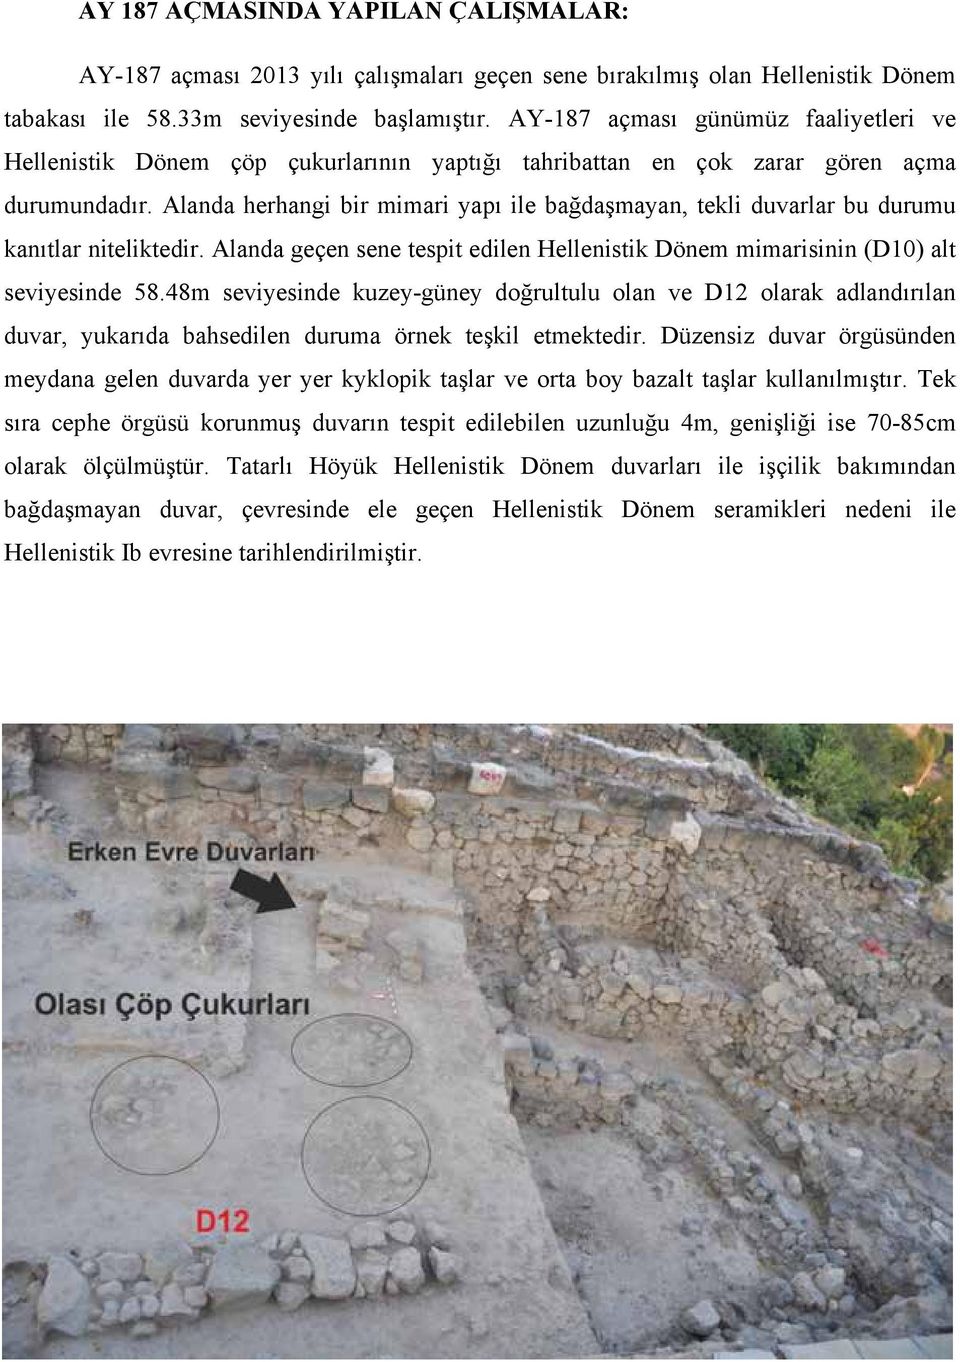 Alanda herhangi bir mimari yapı ile bağdaşmayan, tekli duvarlar bu durumu kanıtlar niteliktedir. Alanda geçen sene tespit edilen Hellenistik Dönem mimarisinin (D10) alt seviyesinde 58.